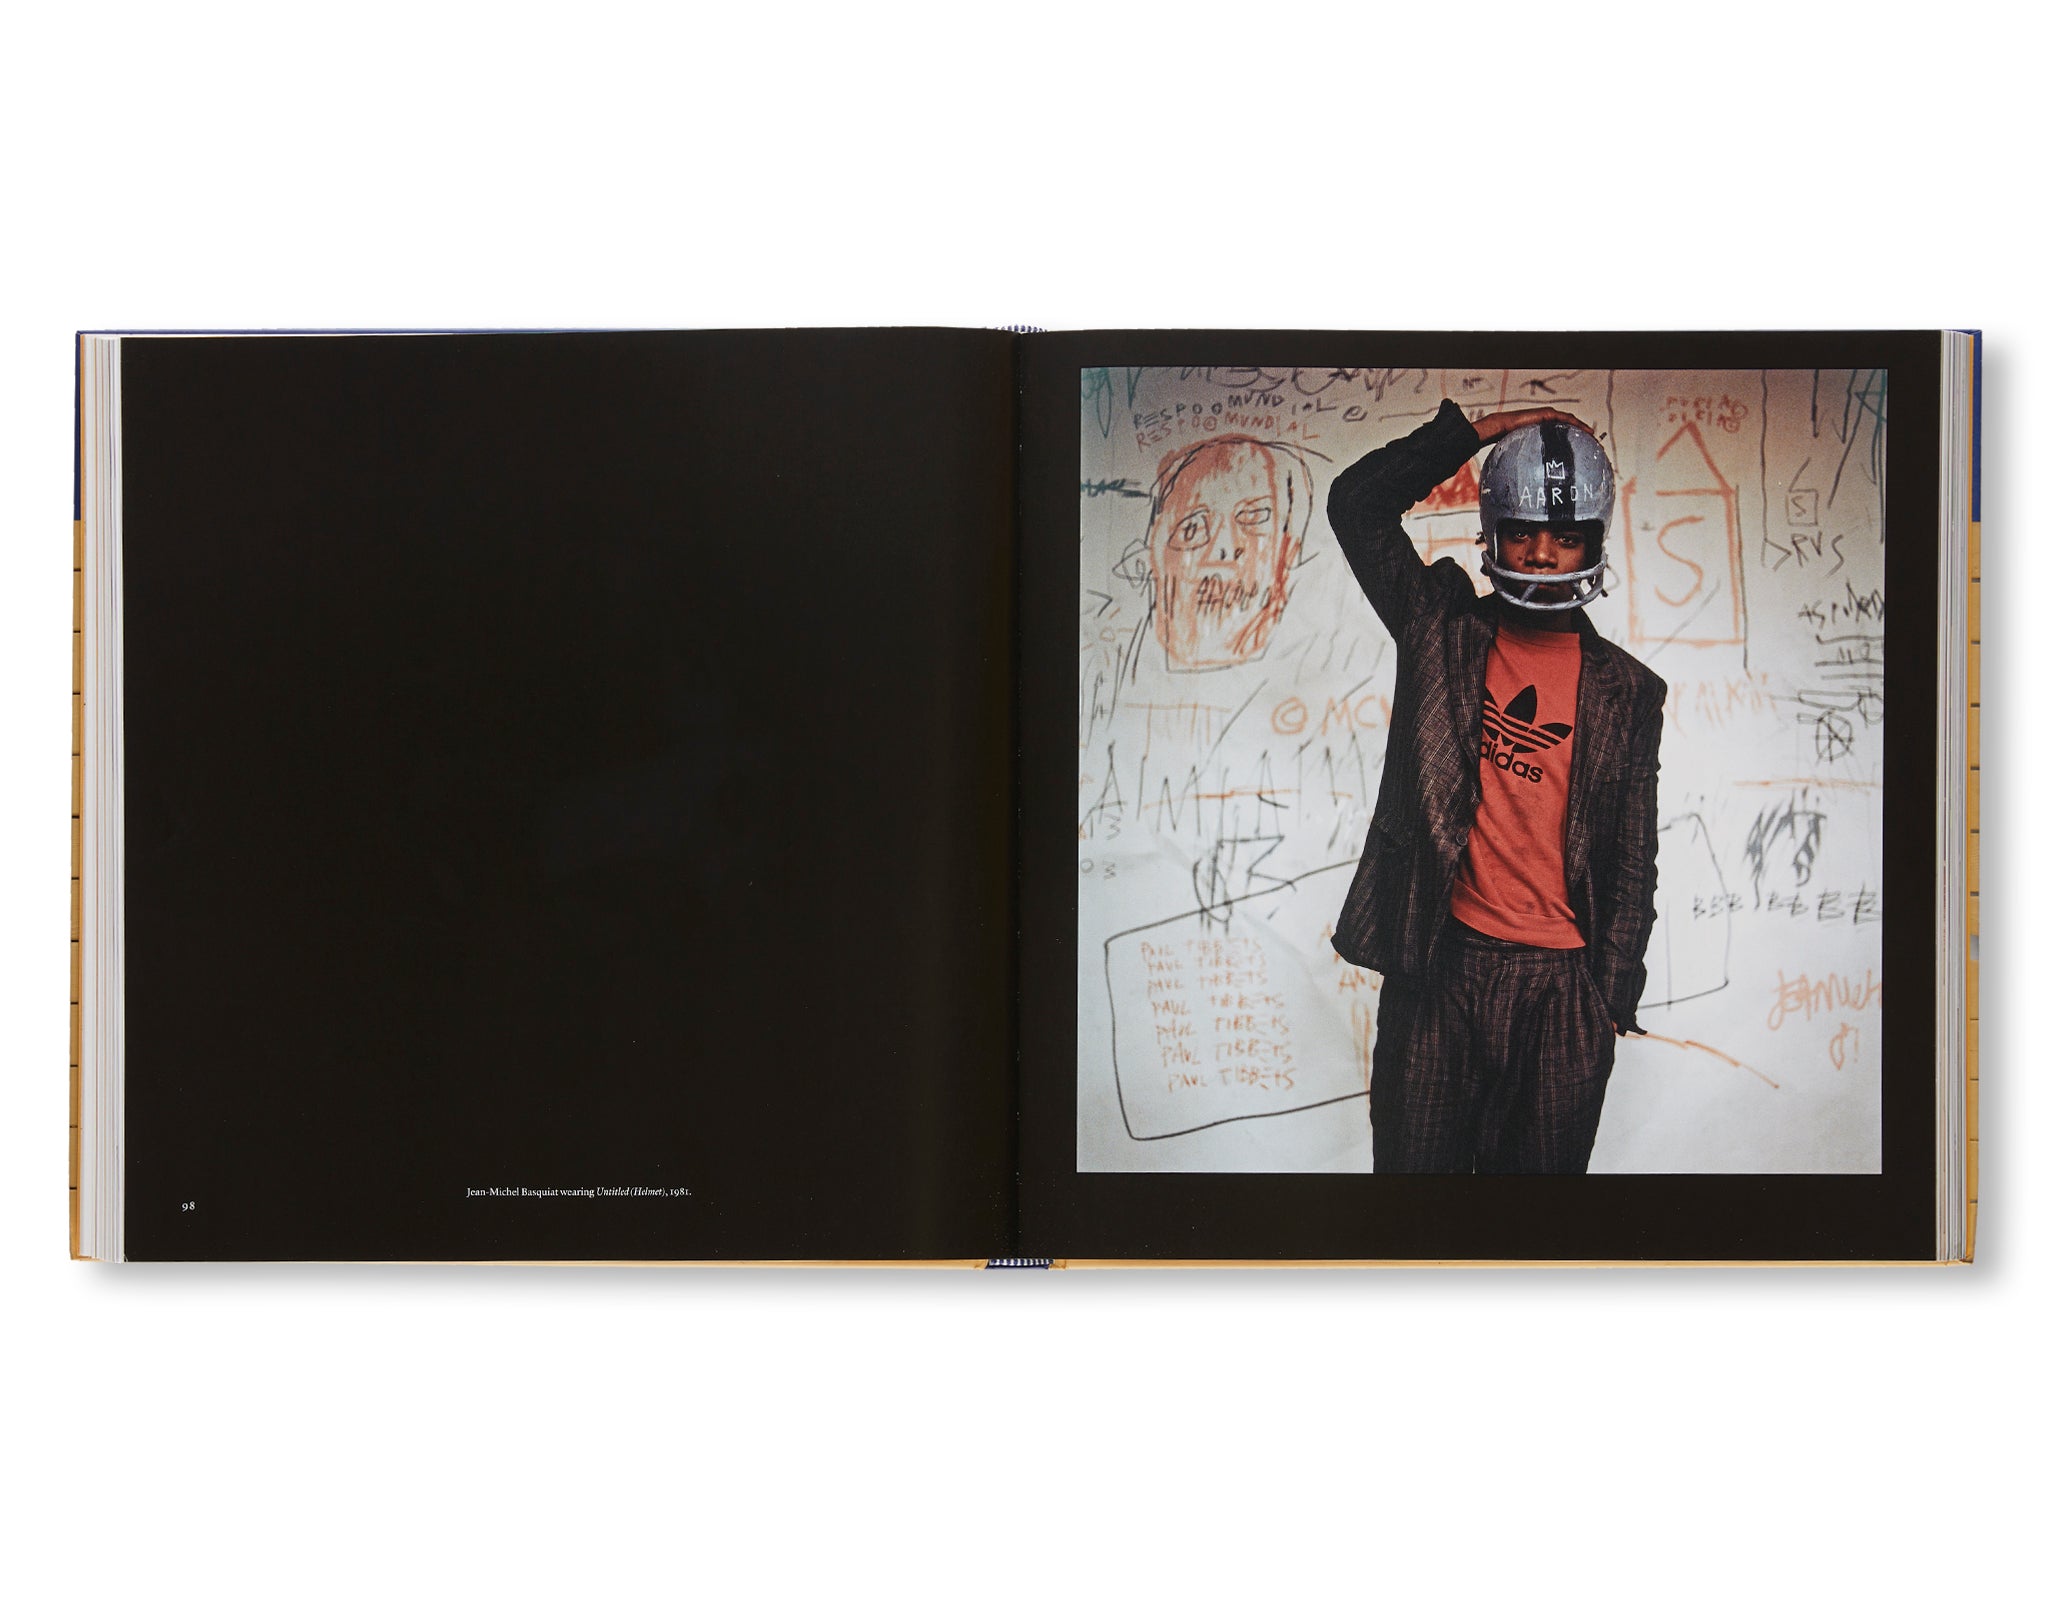 JEAN-MICHEL BASQUIAT: ART AND OBJECTHOOD by Jean-Michel Basquiat